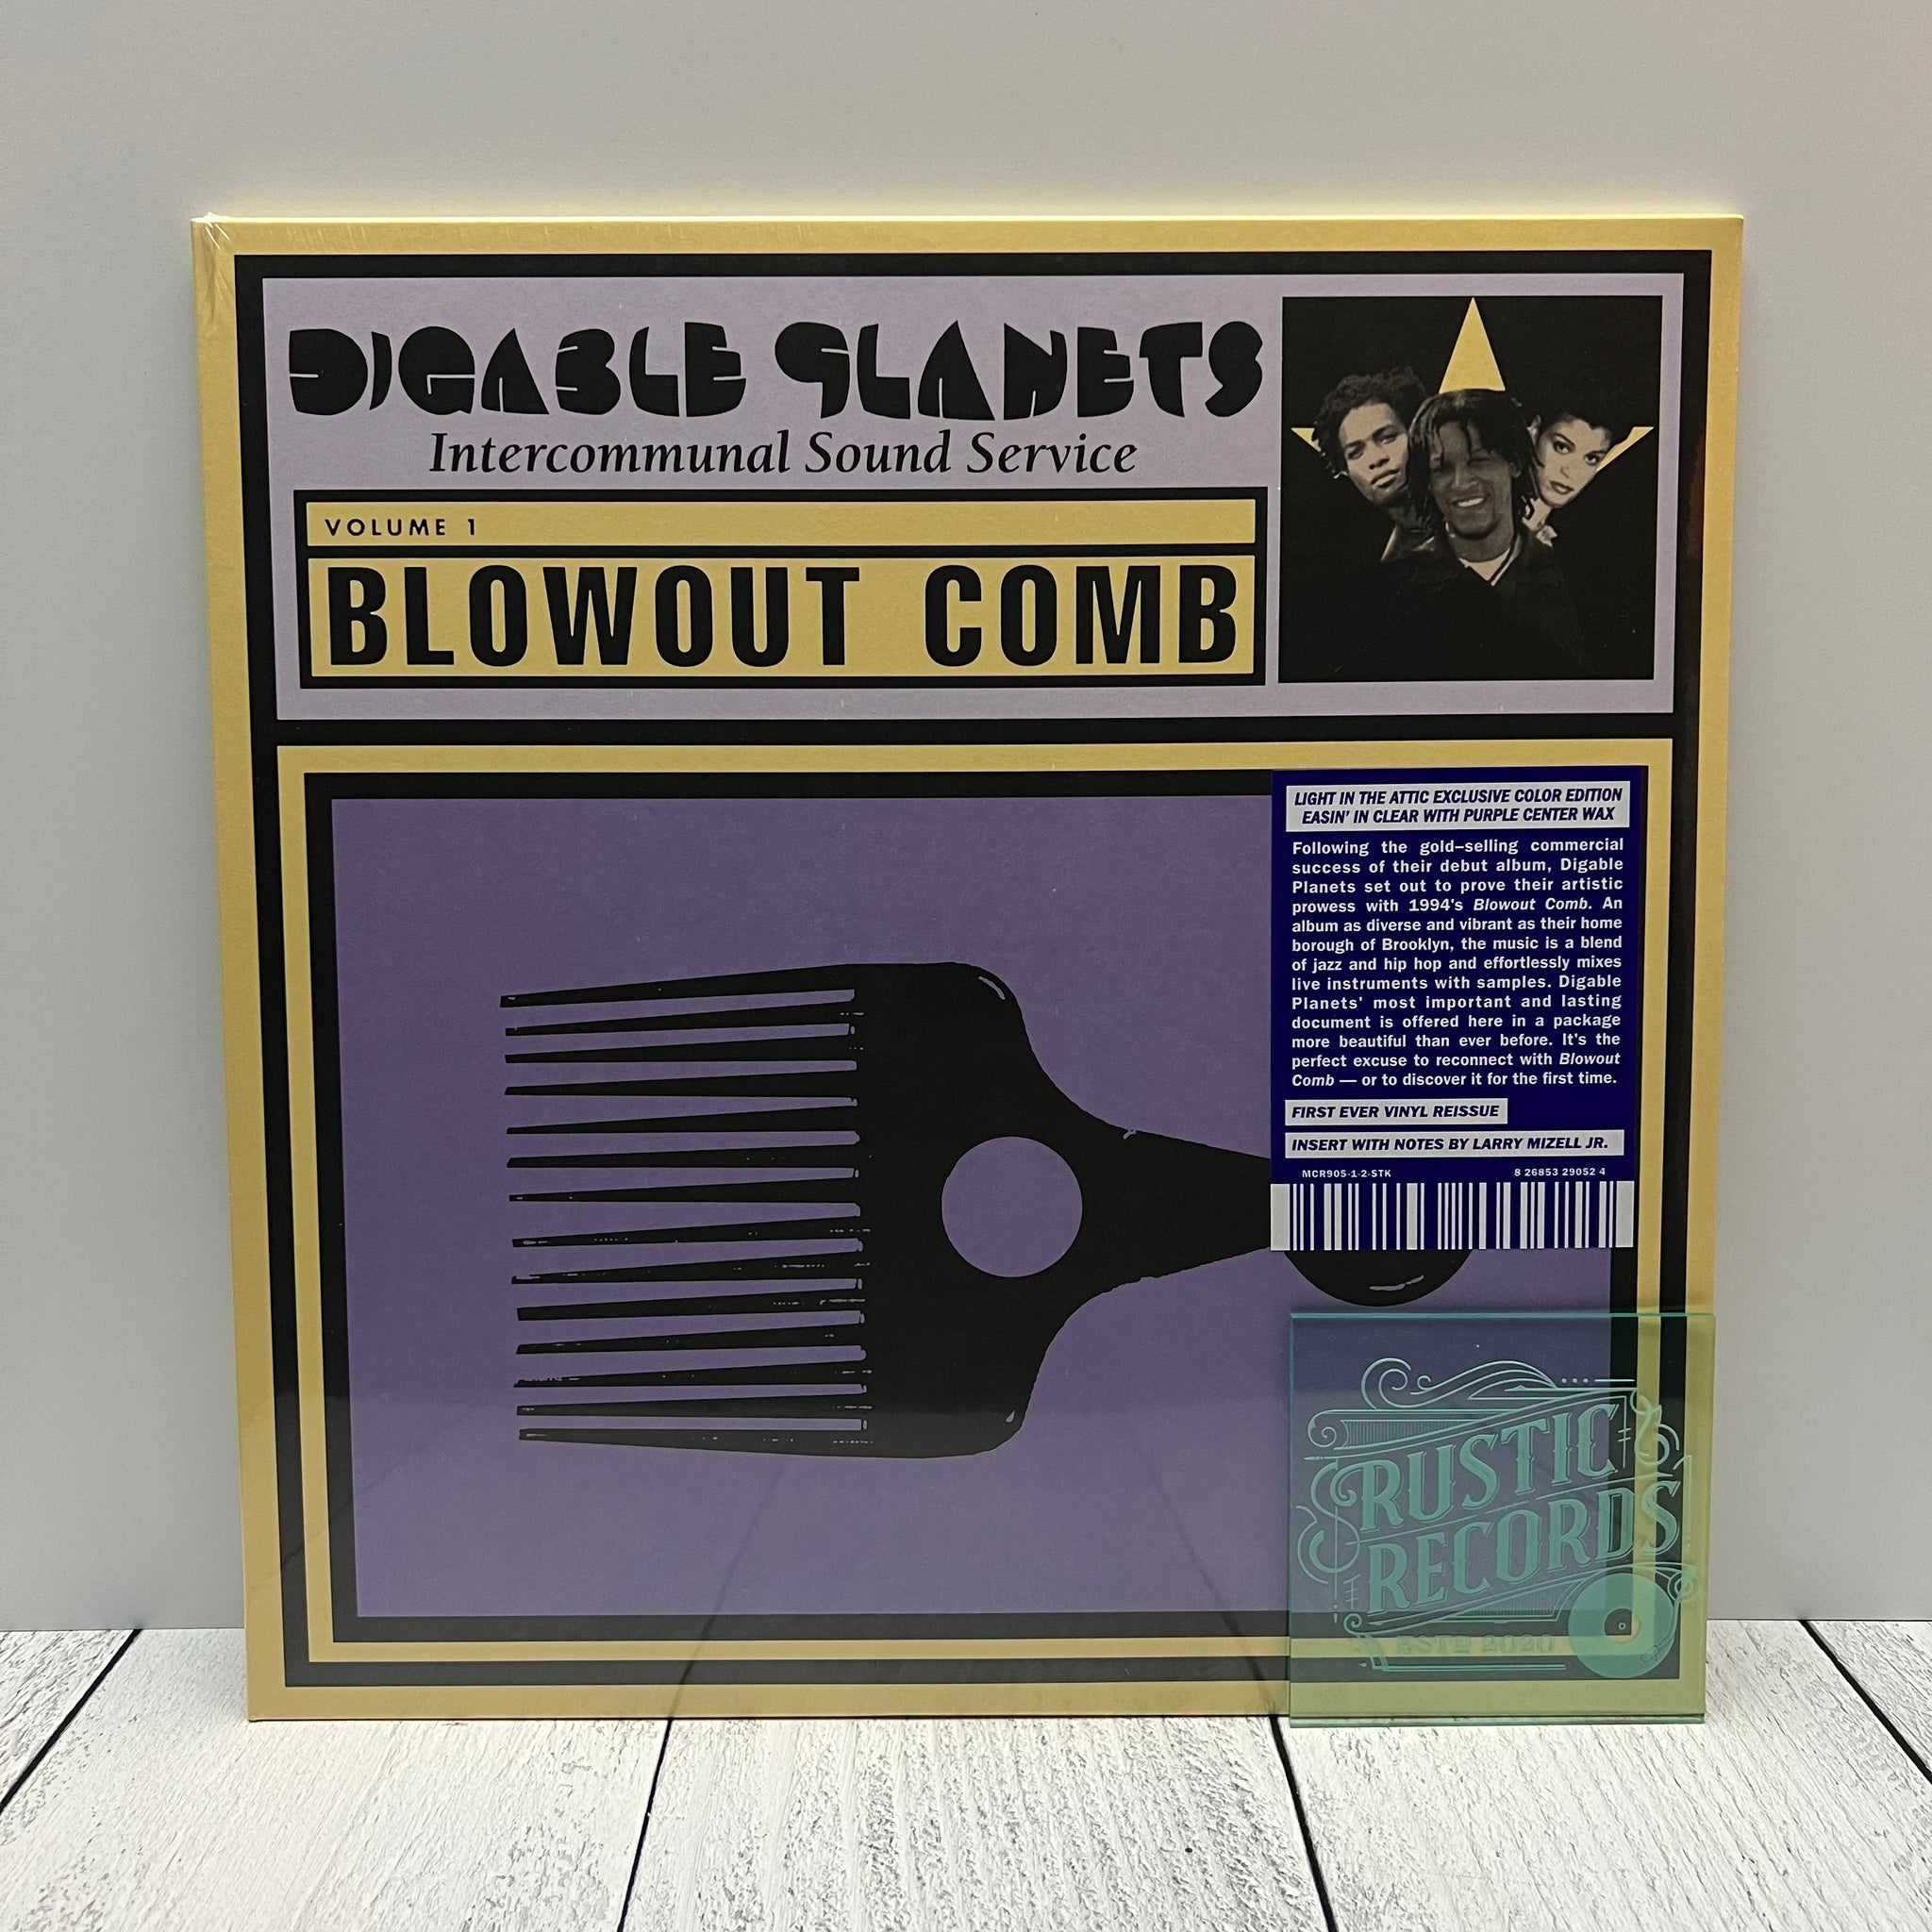 Digable Planets - Blowout Comb (Dazed & Amazed Blue/Gold Vinyl